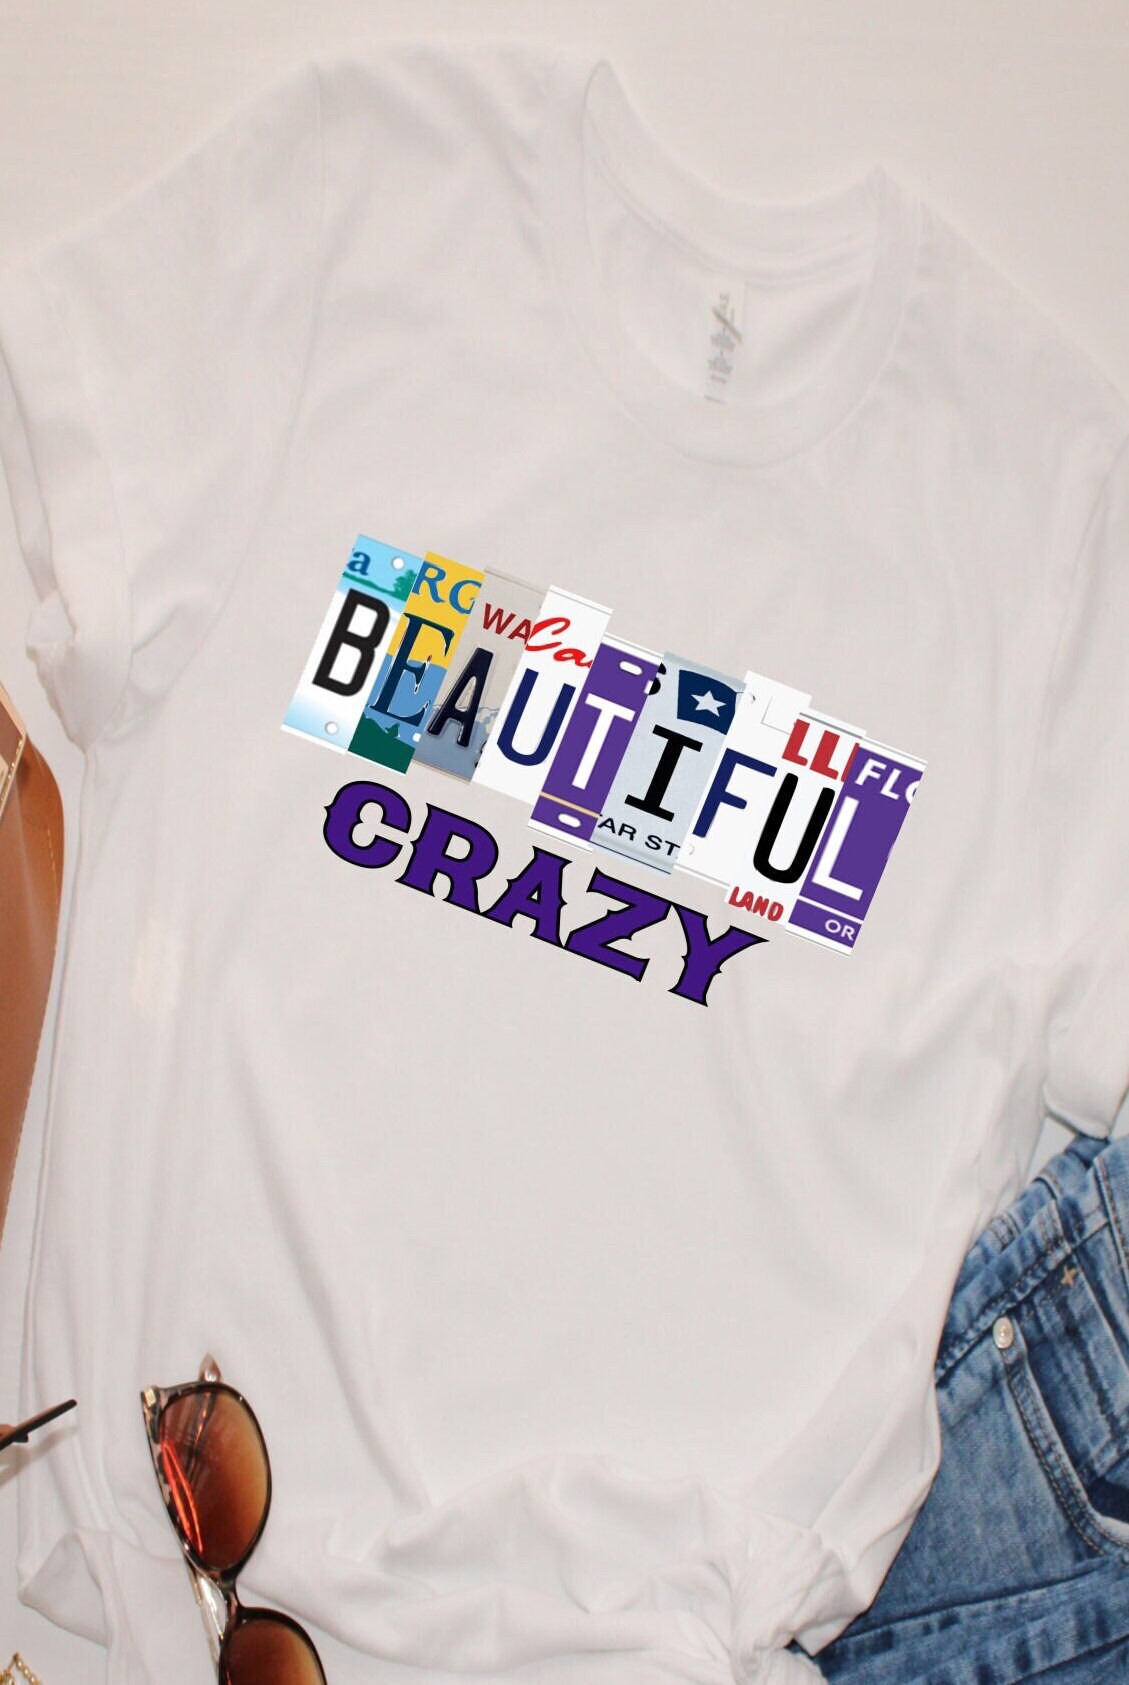 Beautiful Crazy Shirt Beautiful Crazy Lyrics Shirt Country 